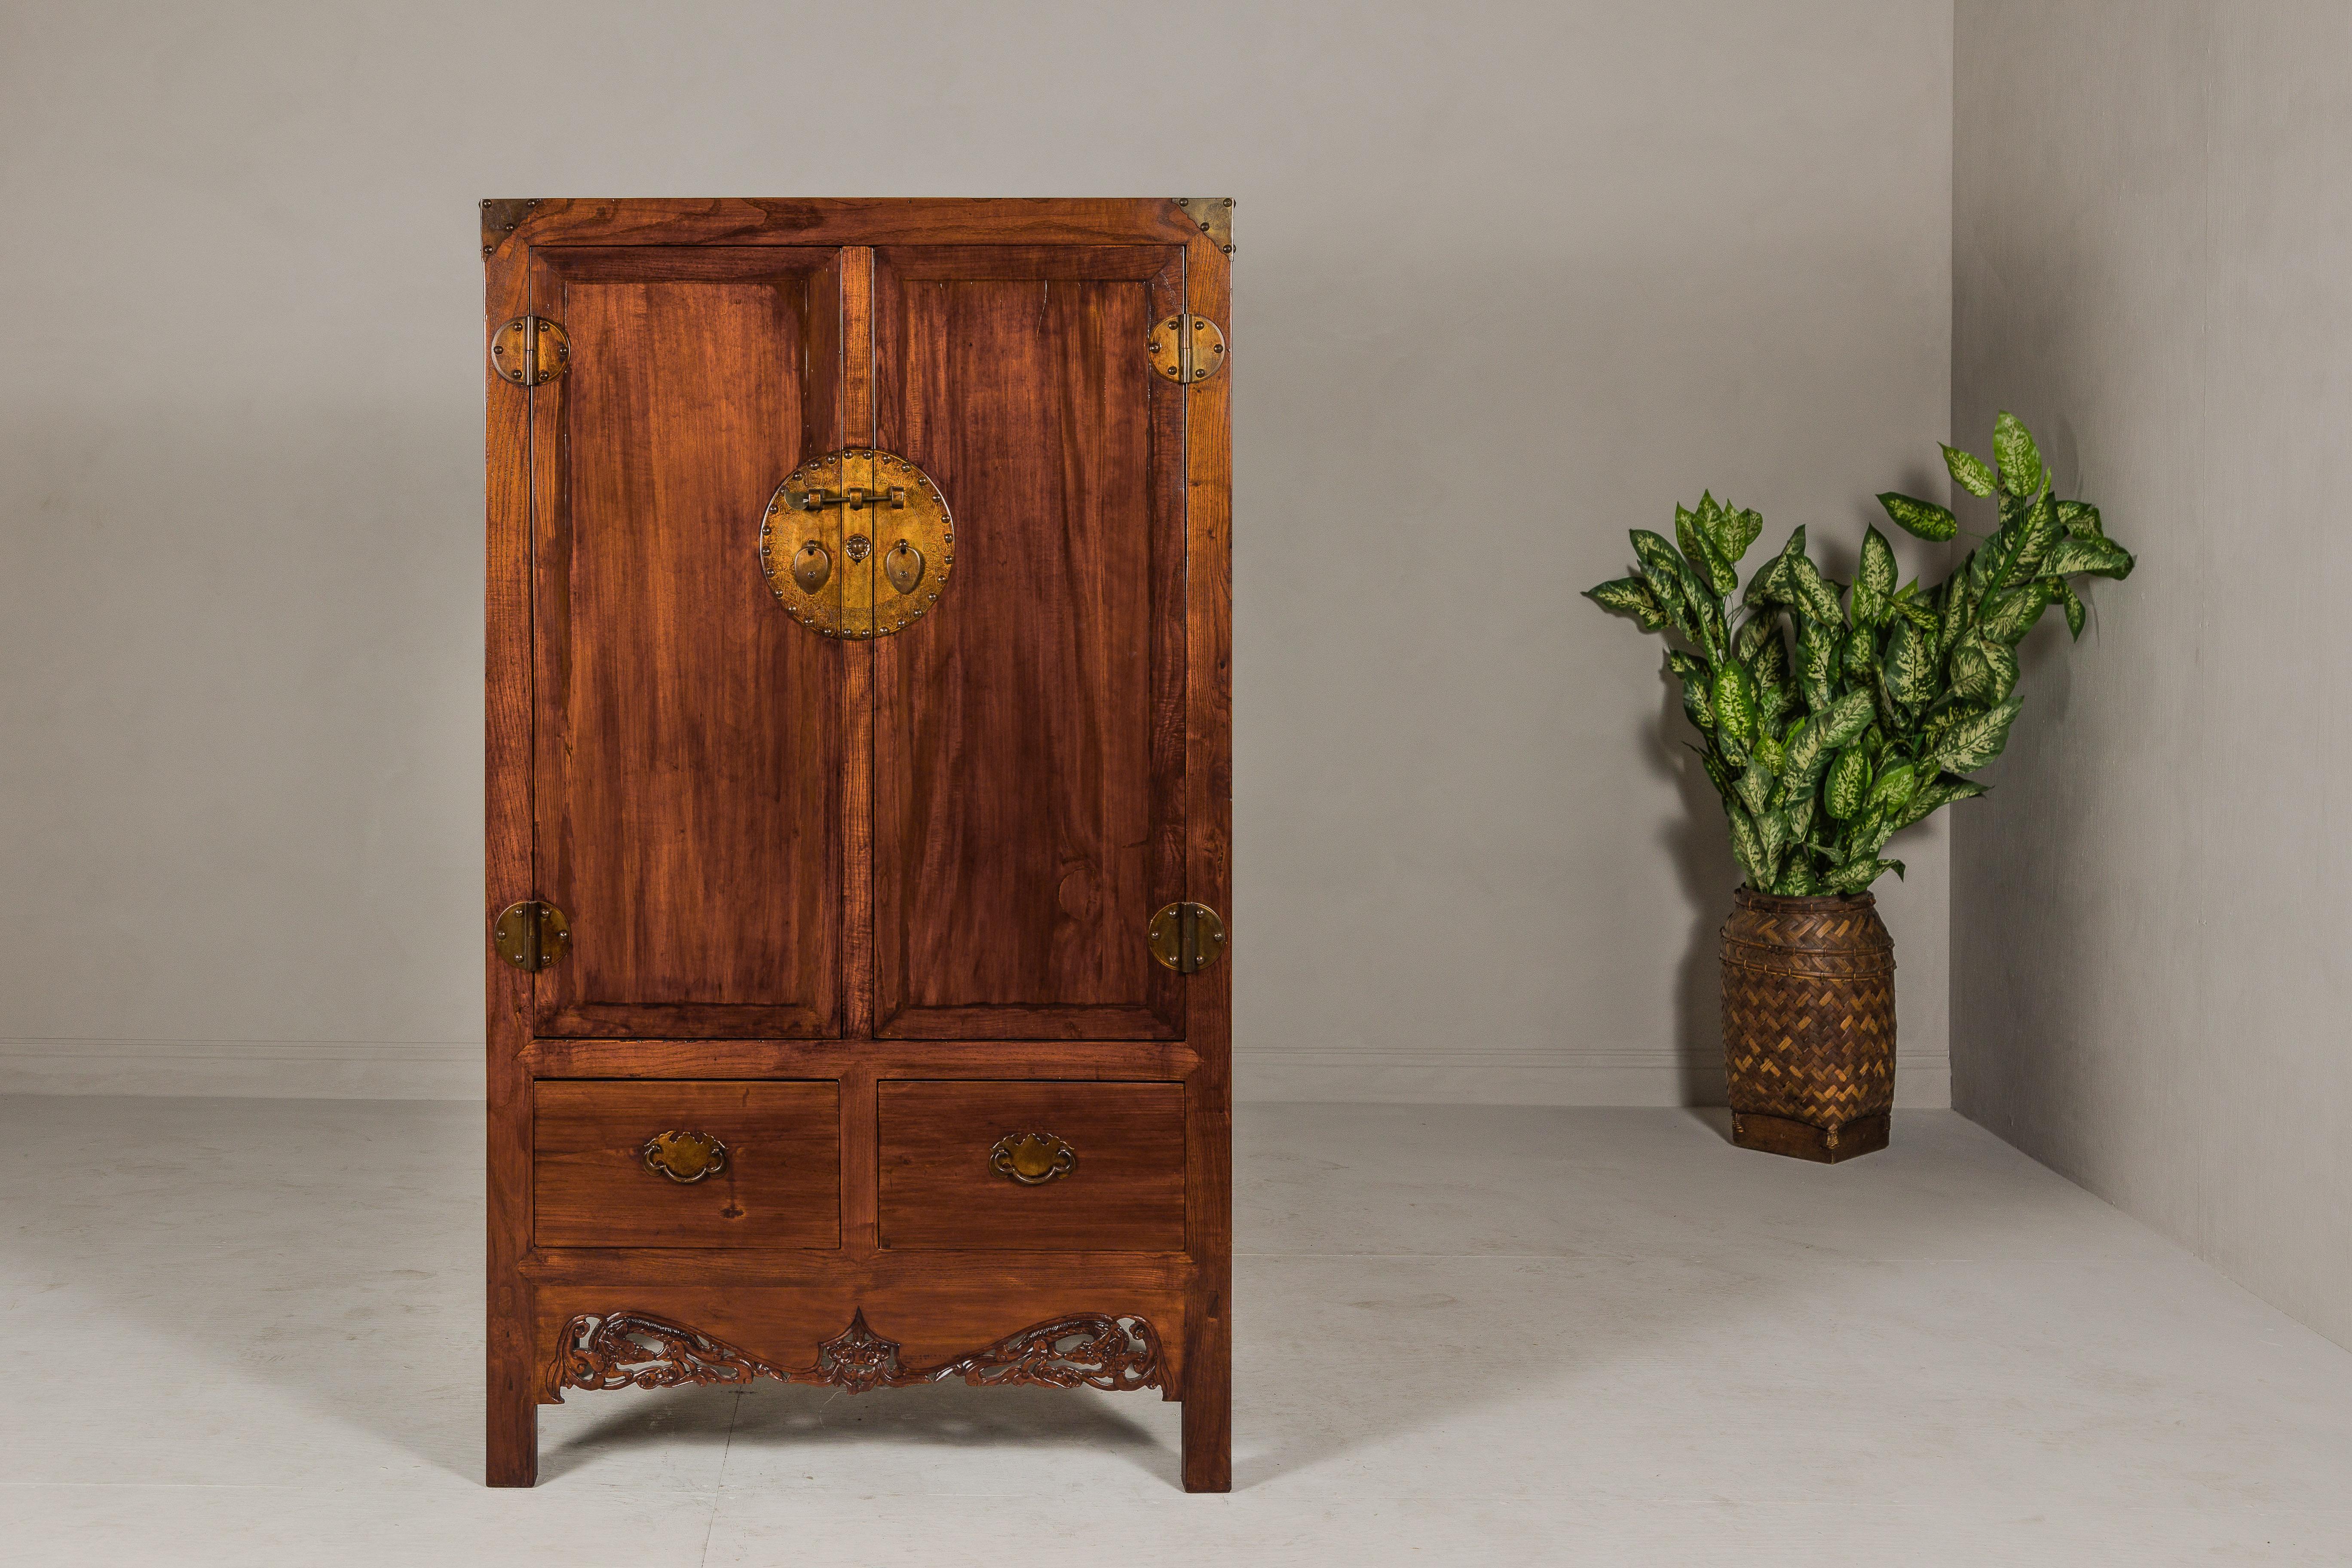 Grand meuble en bois d'élite chinois de la dynastie Qing, datant du XIXe siècle, laqué brun, avec une jupe en bois sculpté, des ferrures à médaillon rond, deux tiroirs extérieurs, des étagères intérieures avec des tiroirs cachés. Ce grand meuble en